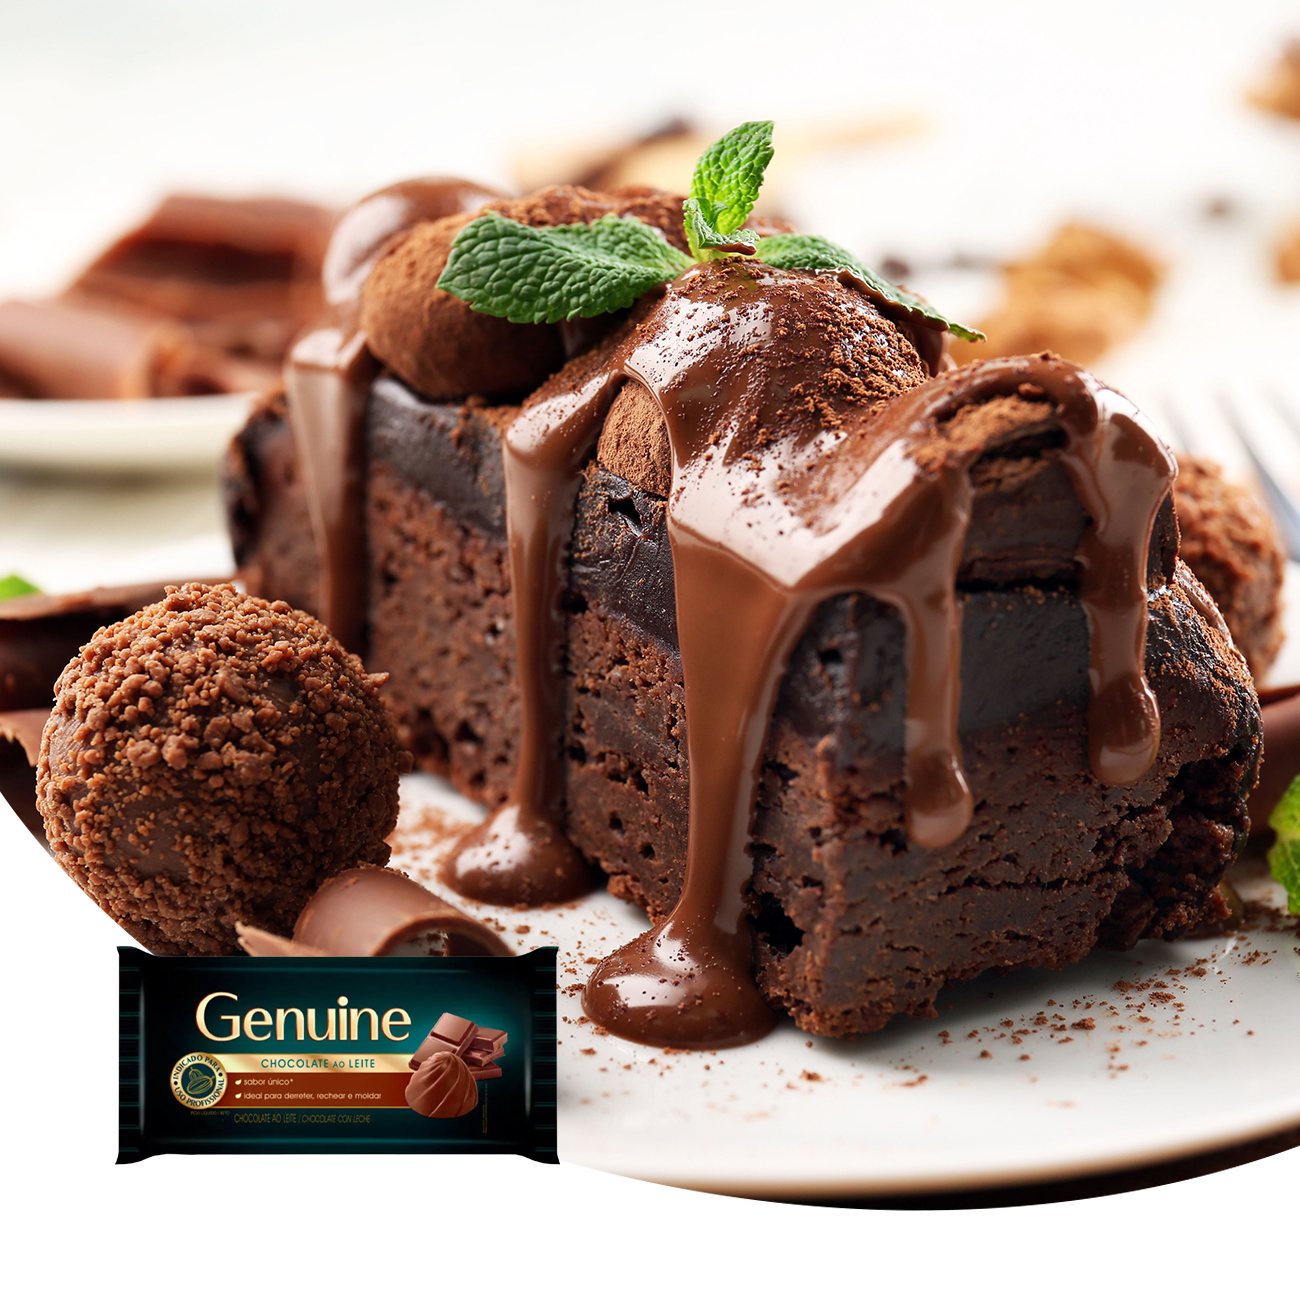 Chocolate em Barra Cargill Genuine ao Leite 2,1kg